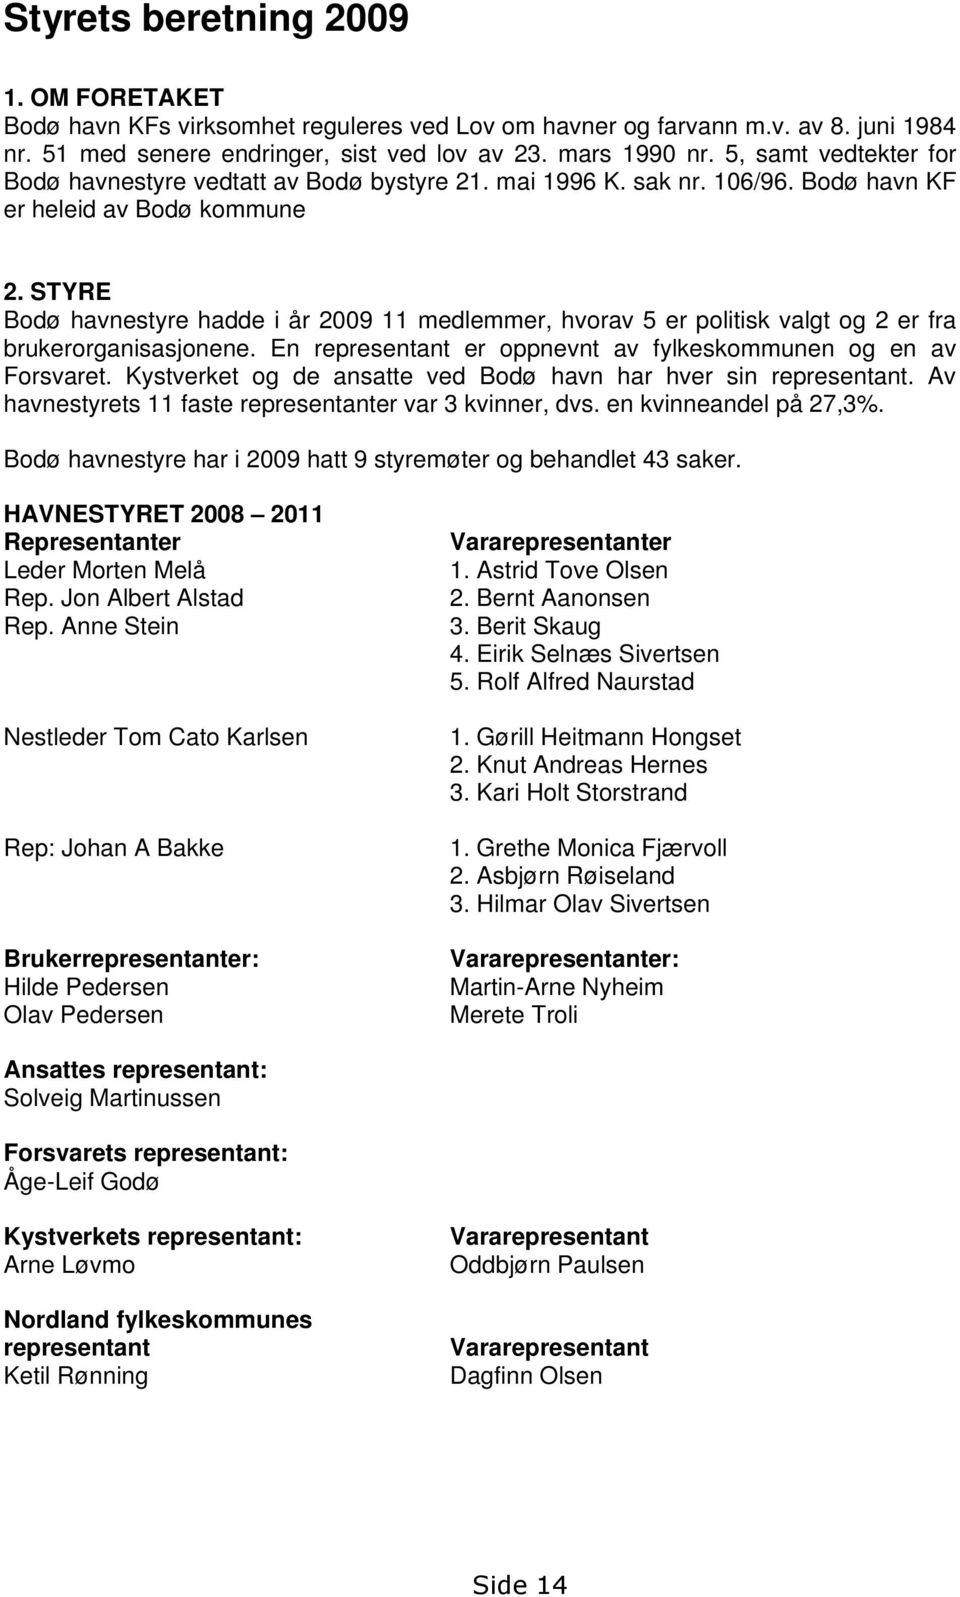 STYRE Bodø havnestyre hadde i år 2009 11 medlemmer, hvorav 5 er politisk valgt og 2 er fra brukerorganisasjonene. En representant er oppnevnt av fylkeskommunen og en av Forsvaret.